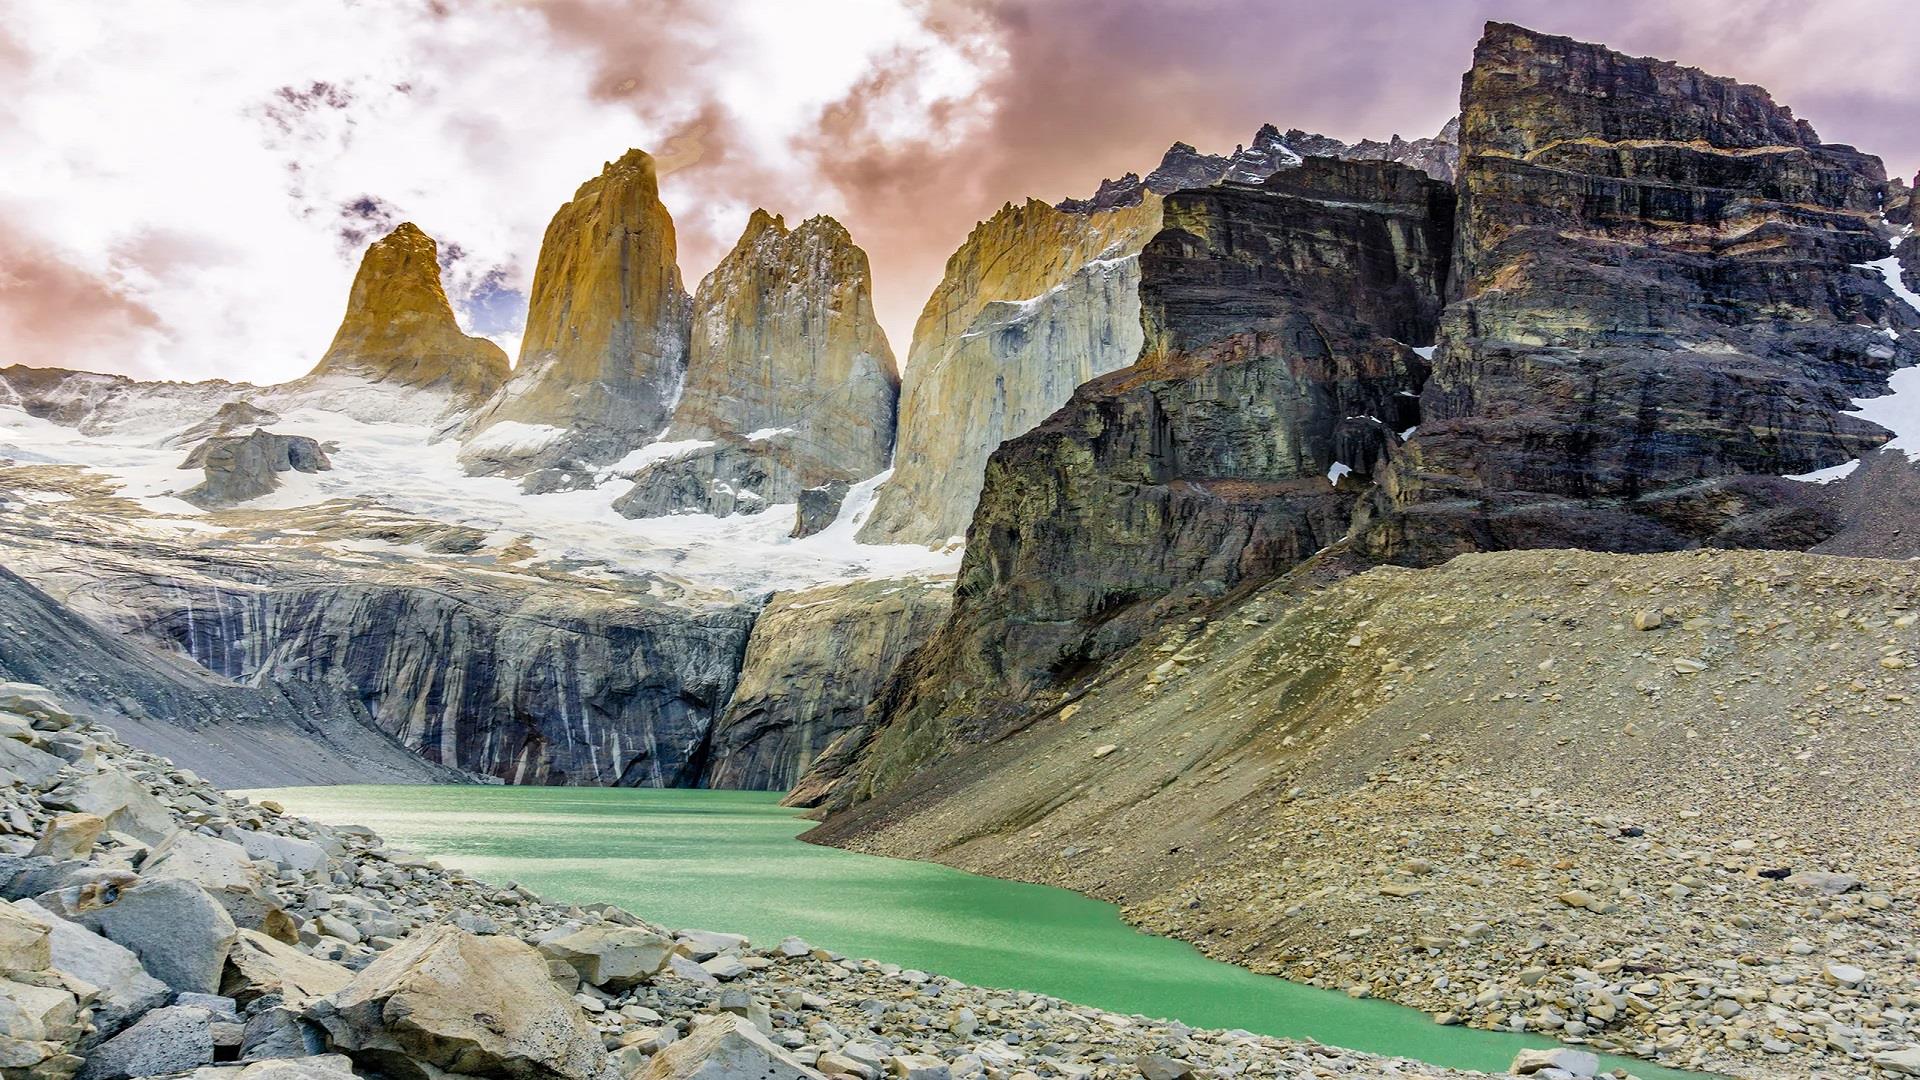 Best of Patagonia